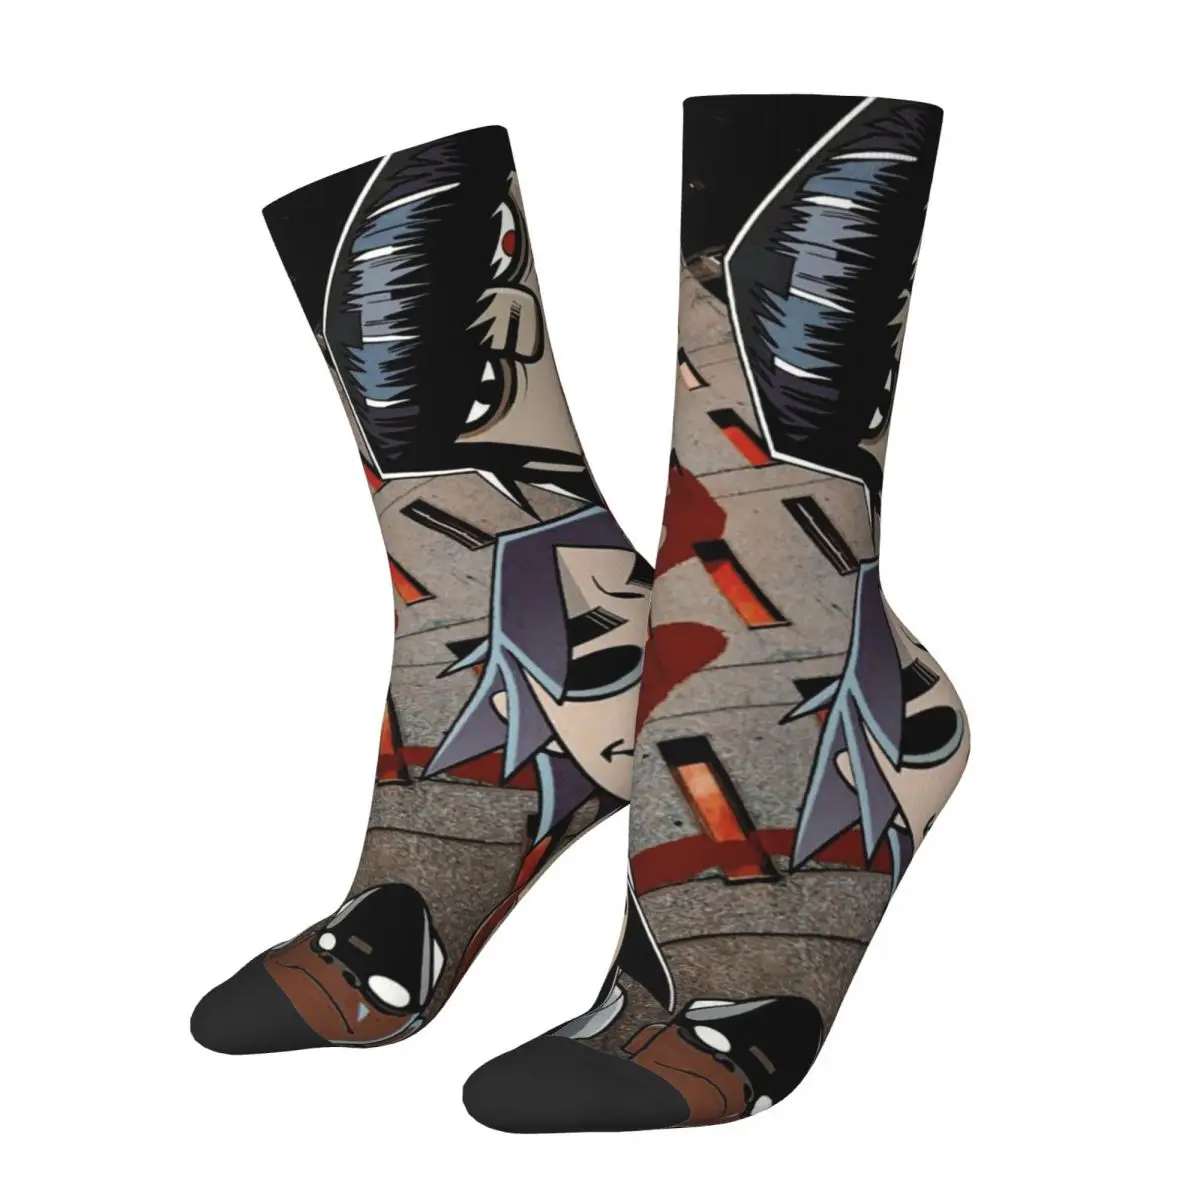 

Crazy Design Music Band Gorillaz Soccer Socks Polyester Middle Tube Socks for Women Men